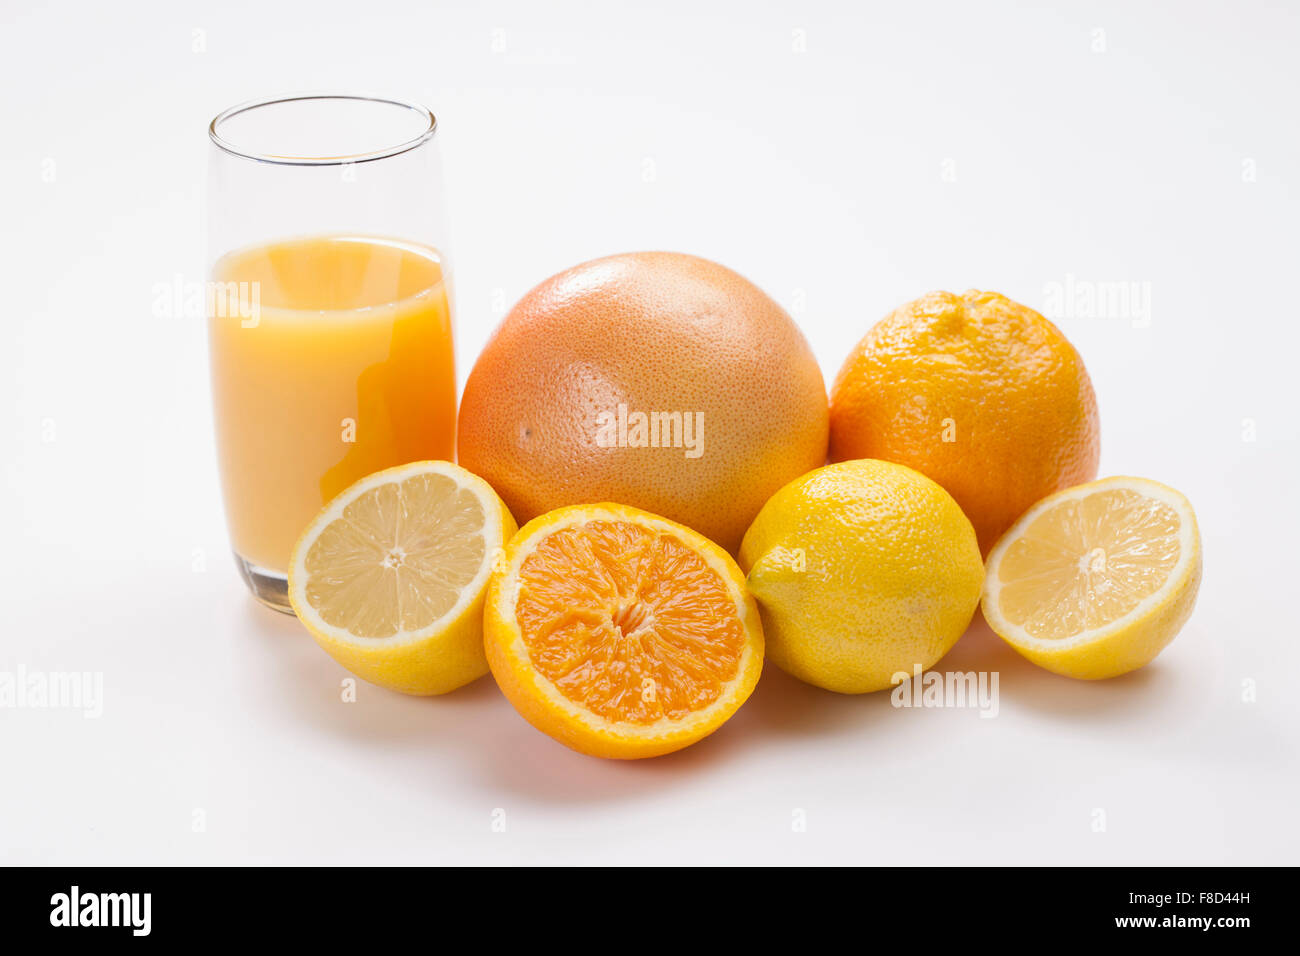 Couleur jaune et orange de fruits dont le pamplemousse, l'orange, les citrons avec un verre de jus en orange Banque D'Images